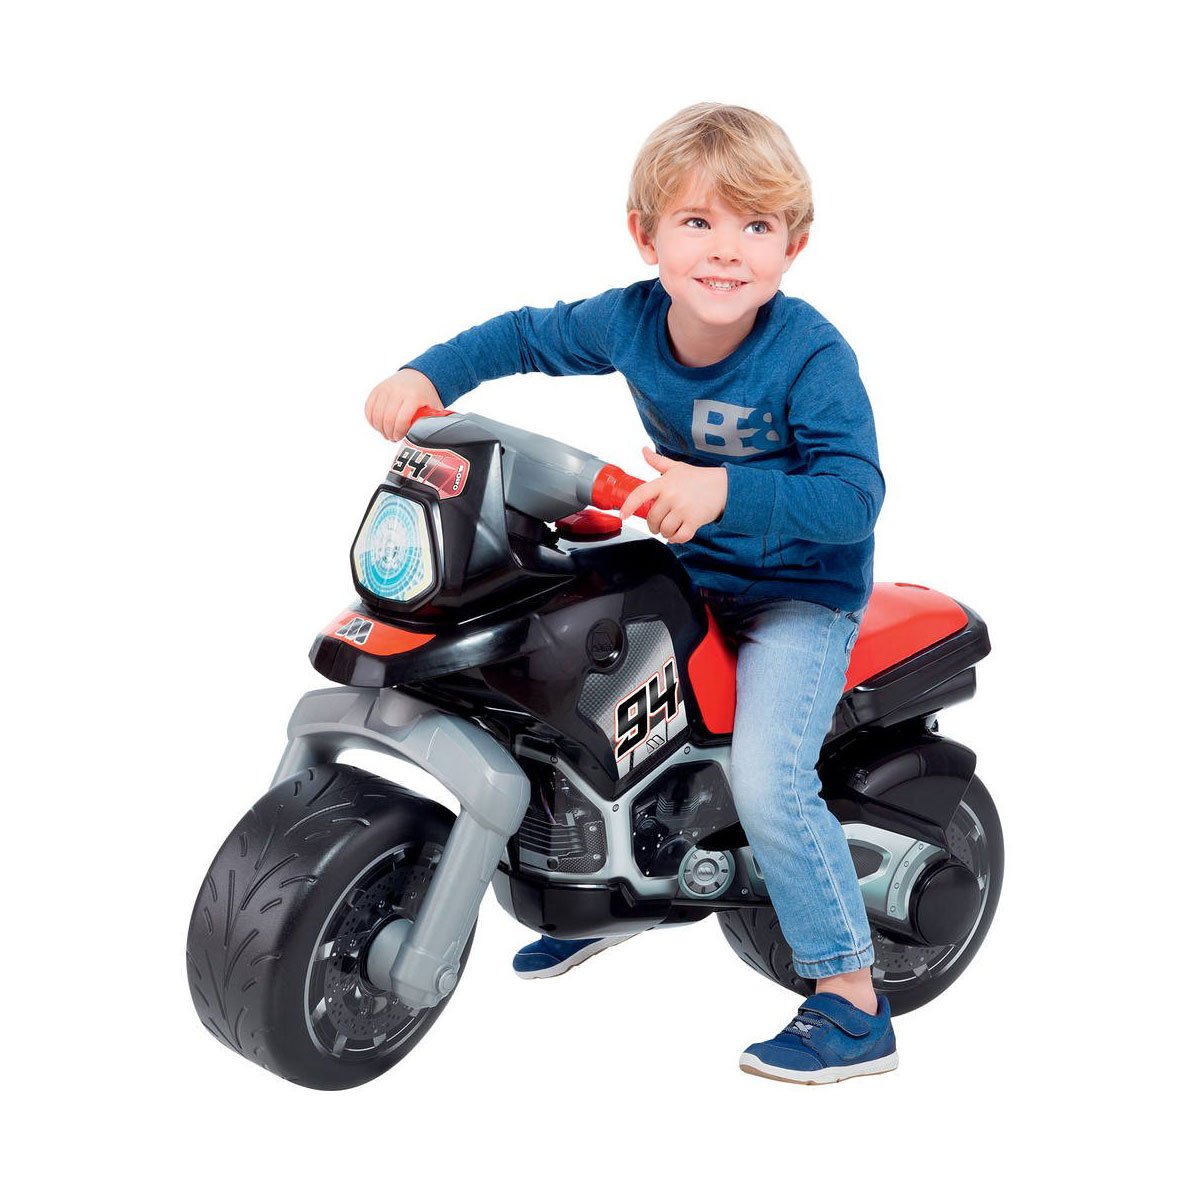 Moto jouet enfant 4 ans Boutique en Ligne